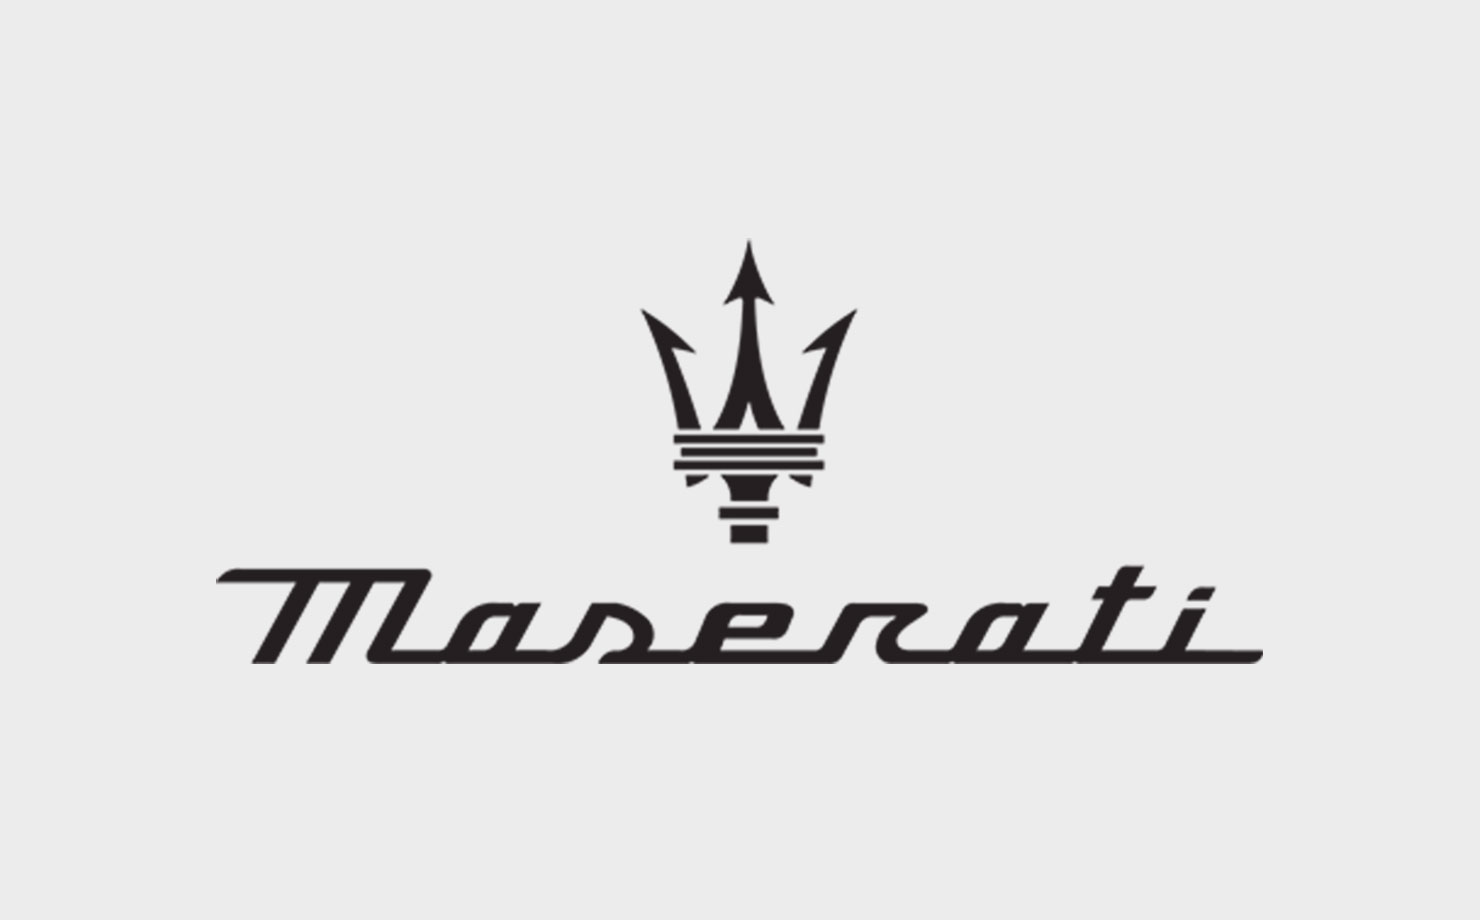 Image of Maserati logo